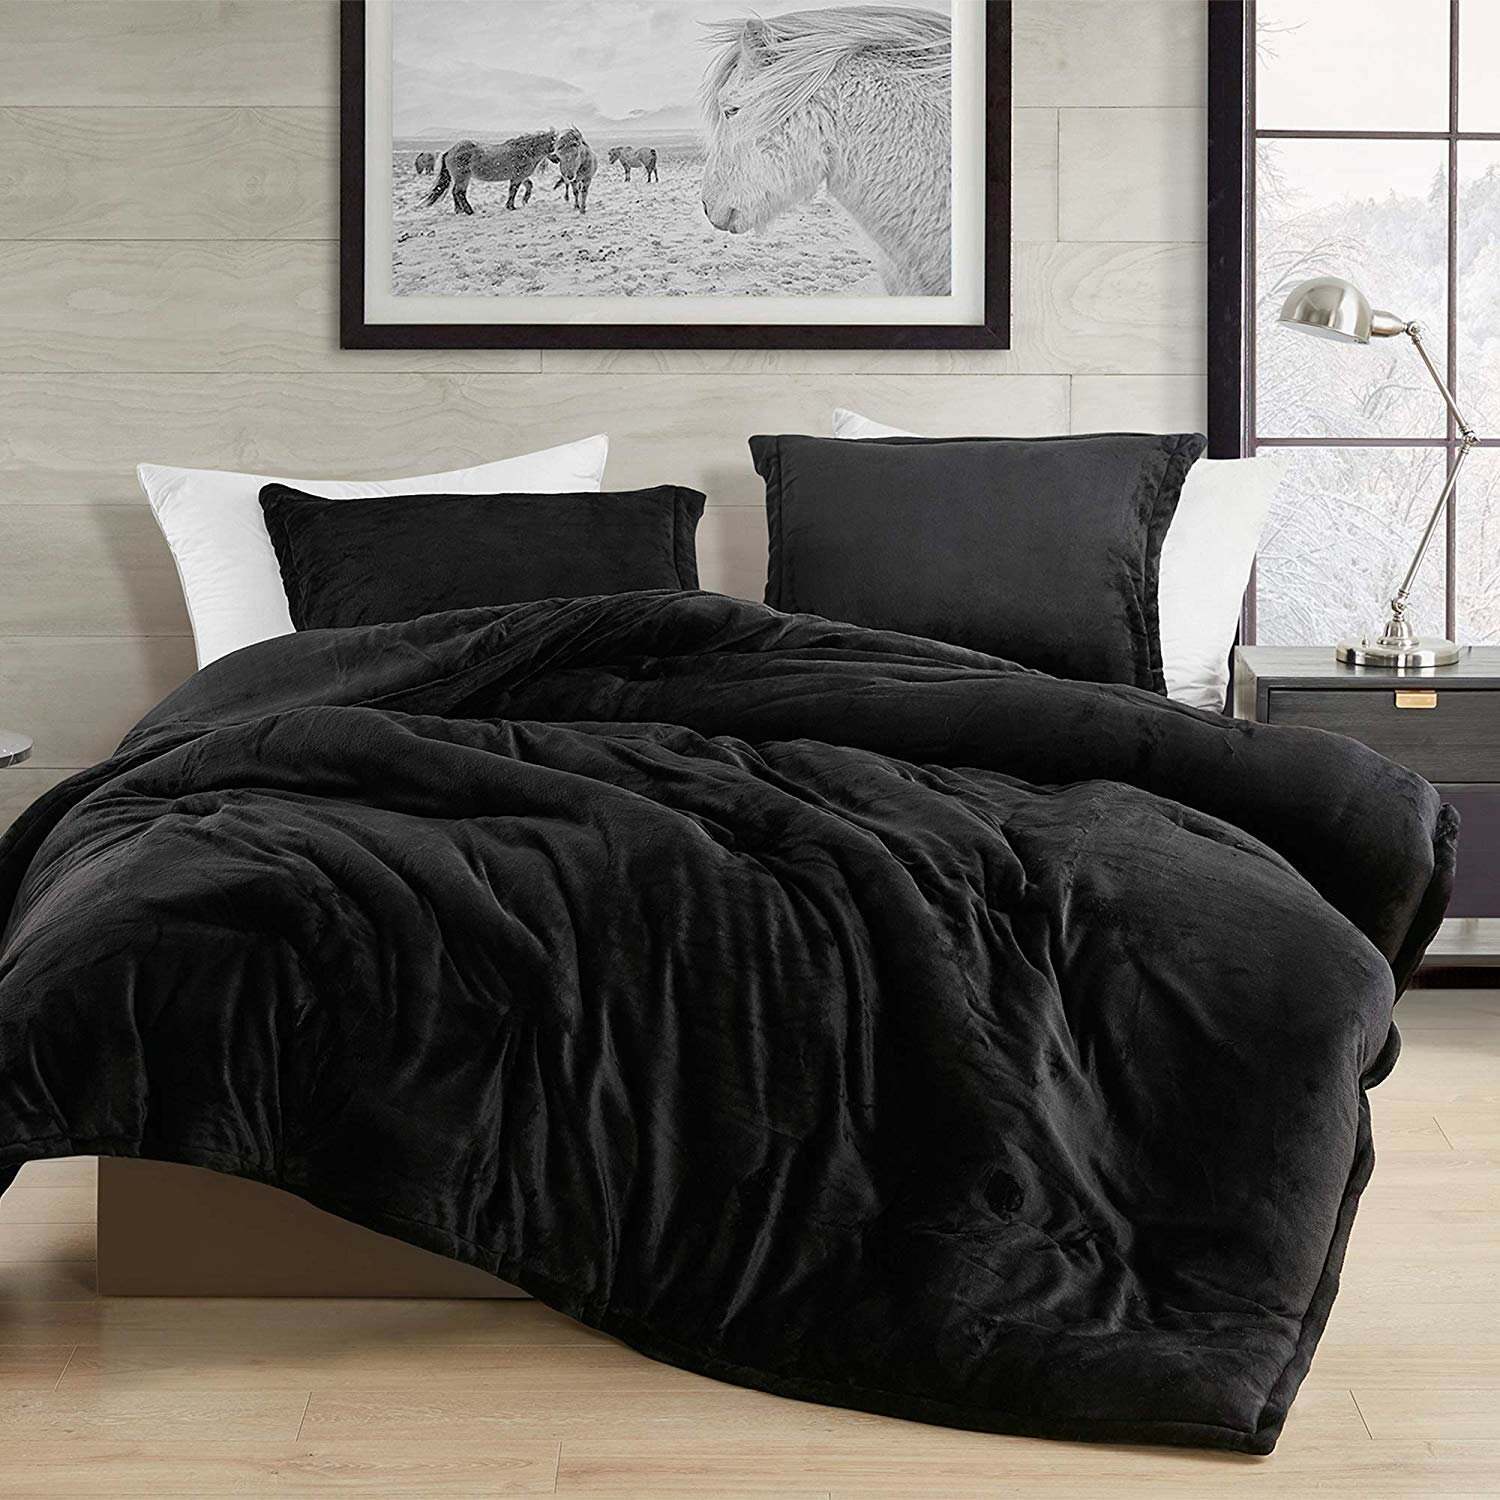 luxury queen bed comforter sets